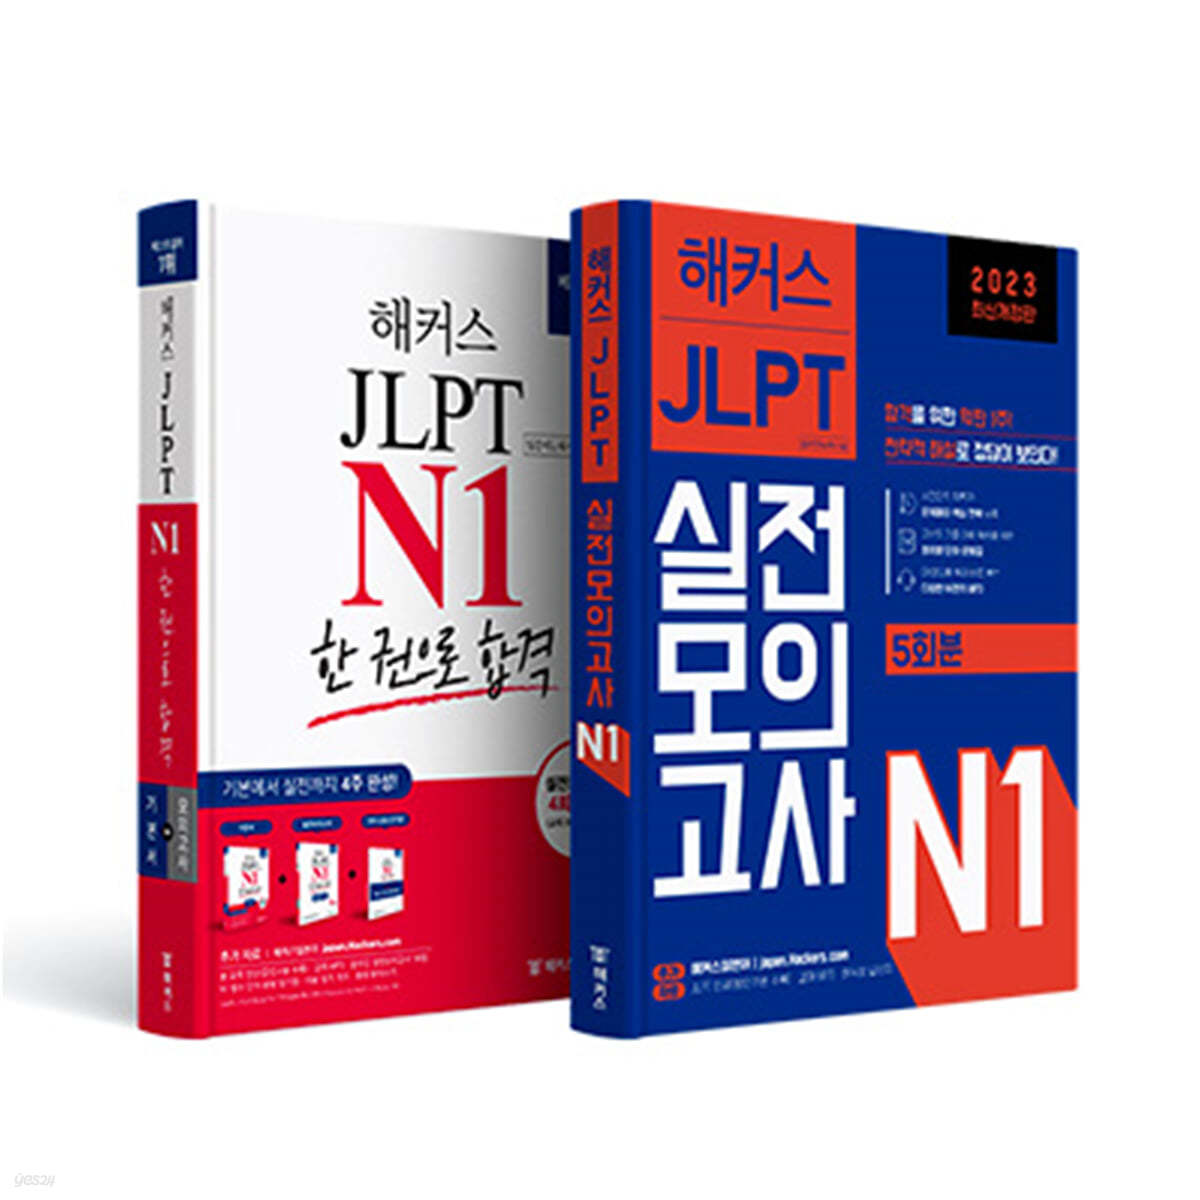 해커스일본어 JLPT 일본어능력시험 N1 기본서 + 실전모의고사 5회분 실전 완성세트